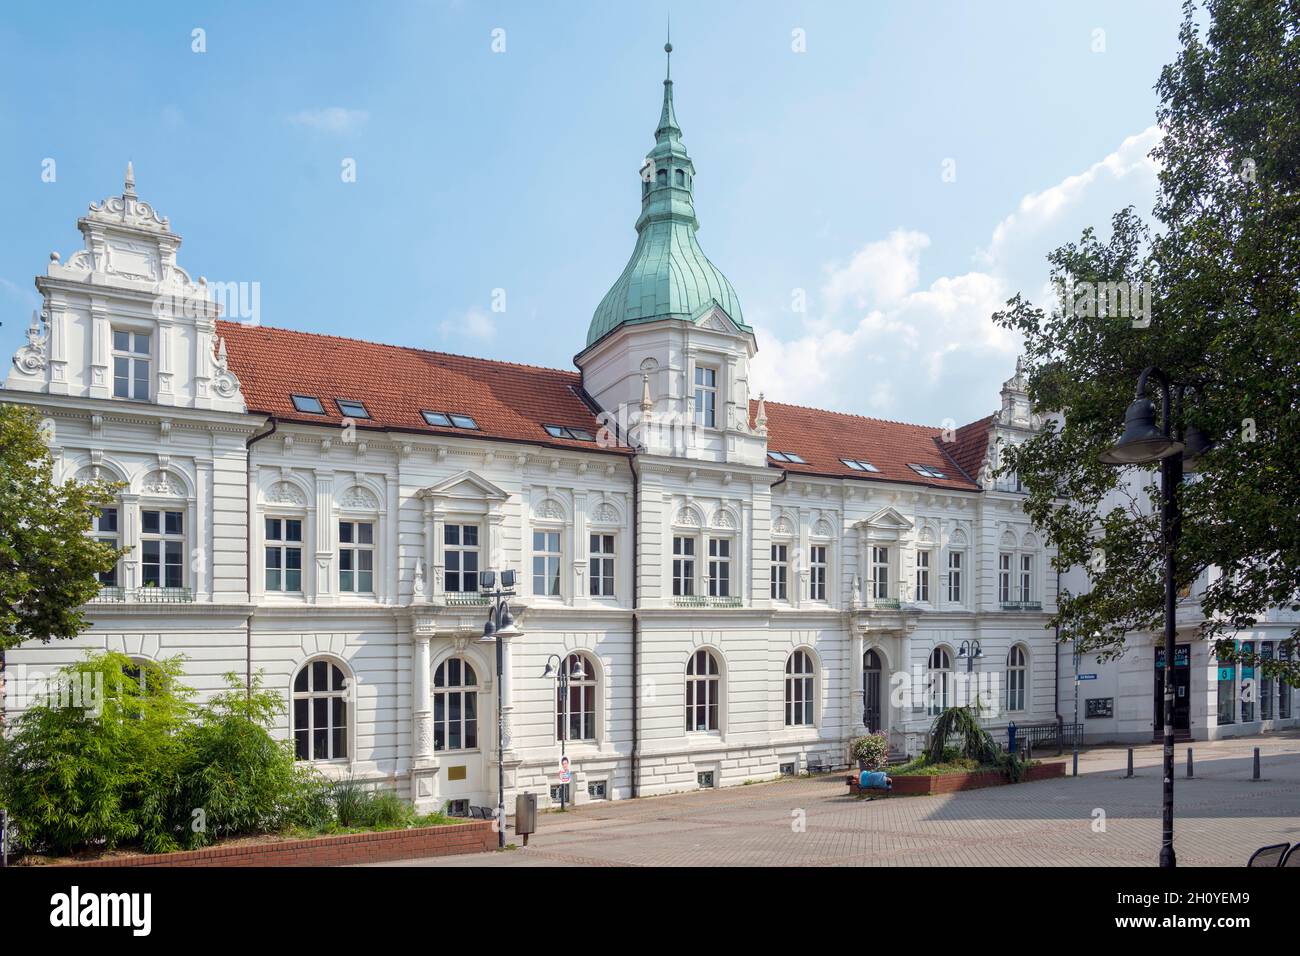 Deutschland, Nordrhein-Westfalen, Bochum-Wattenscheid, Altes Rathaus Stock Photo